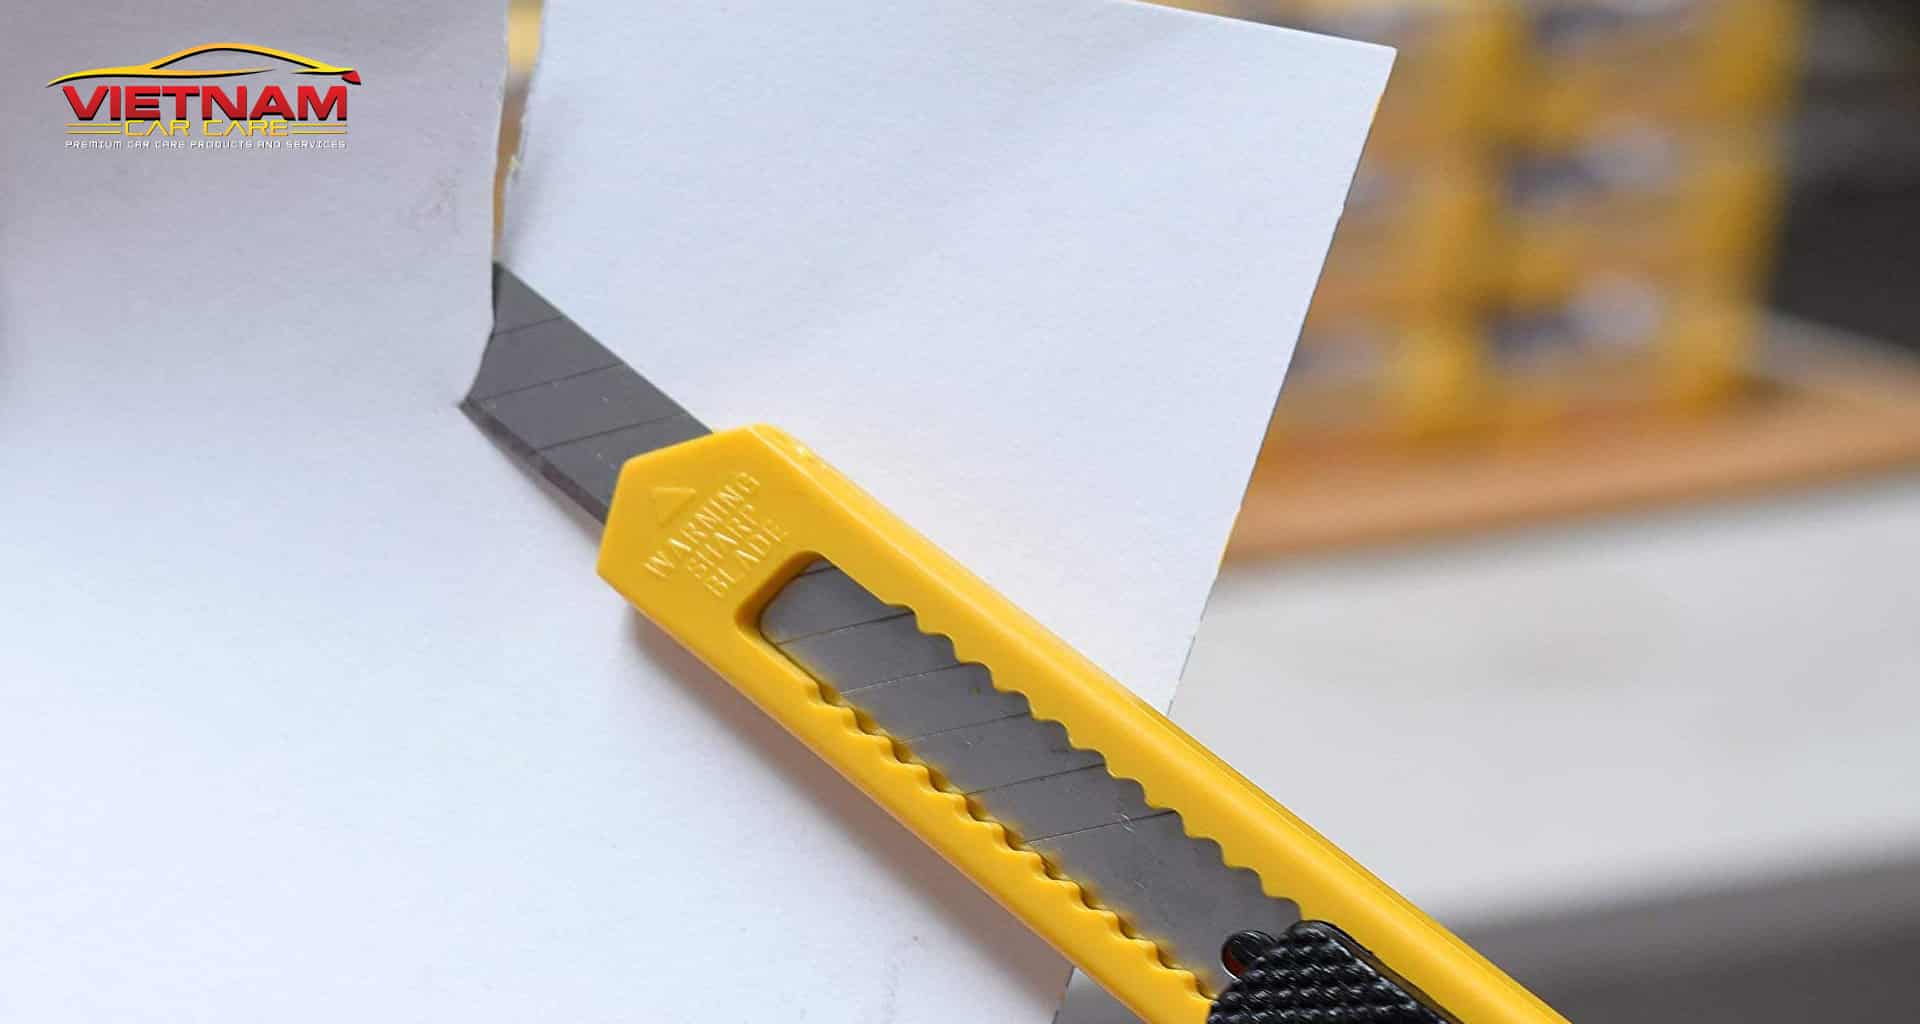 Sử dụng dao rọc giấy cắt thử một đường dài và kiểm tra xem vết cắt có đều không hay méo?